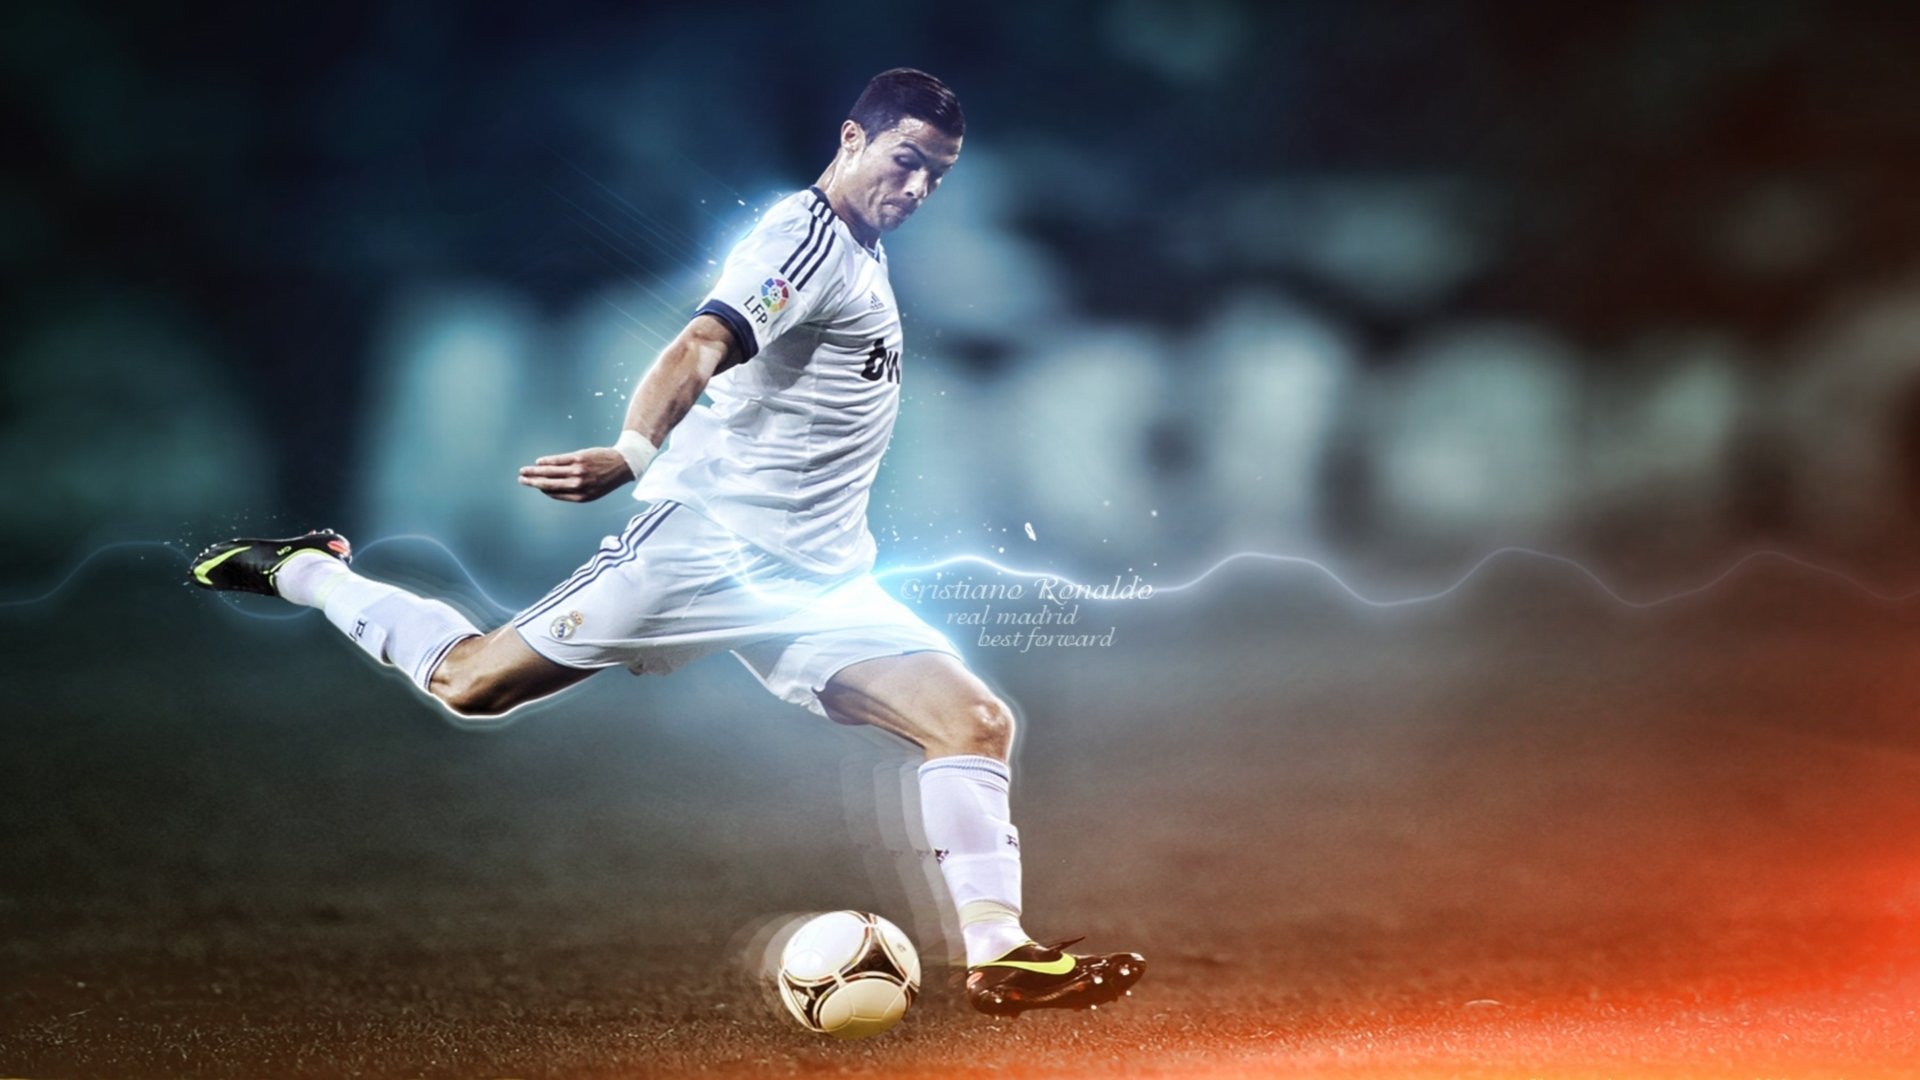 Cristiano Ronaldo HD Wallpaper | Background Image ...